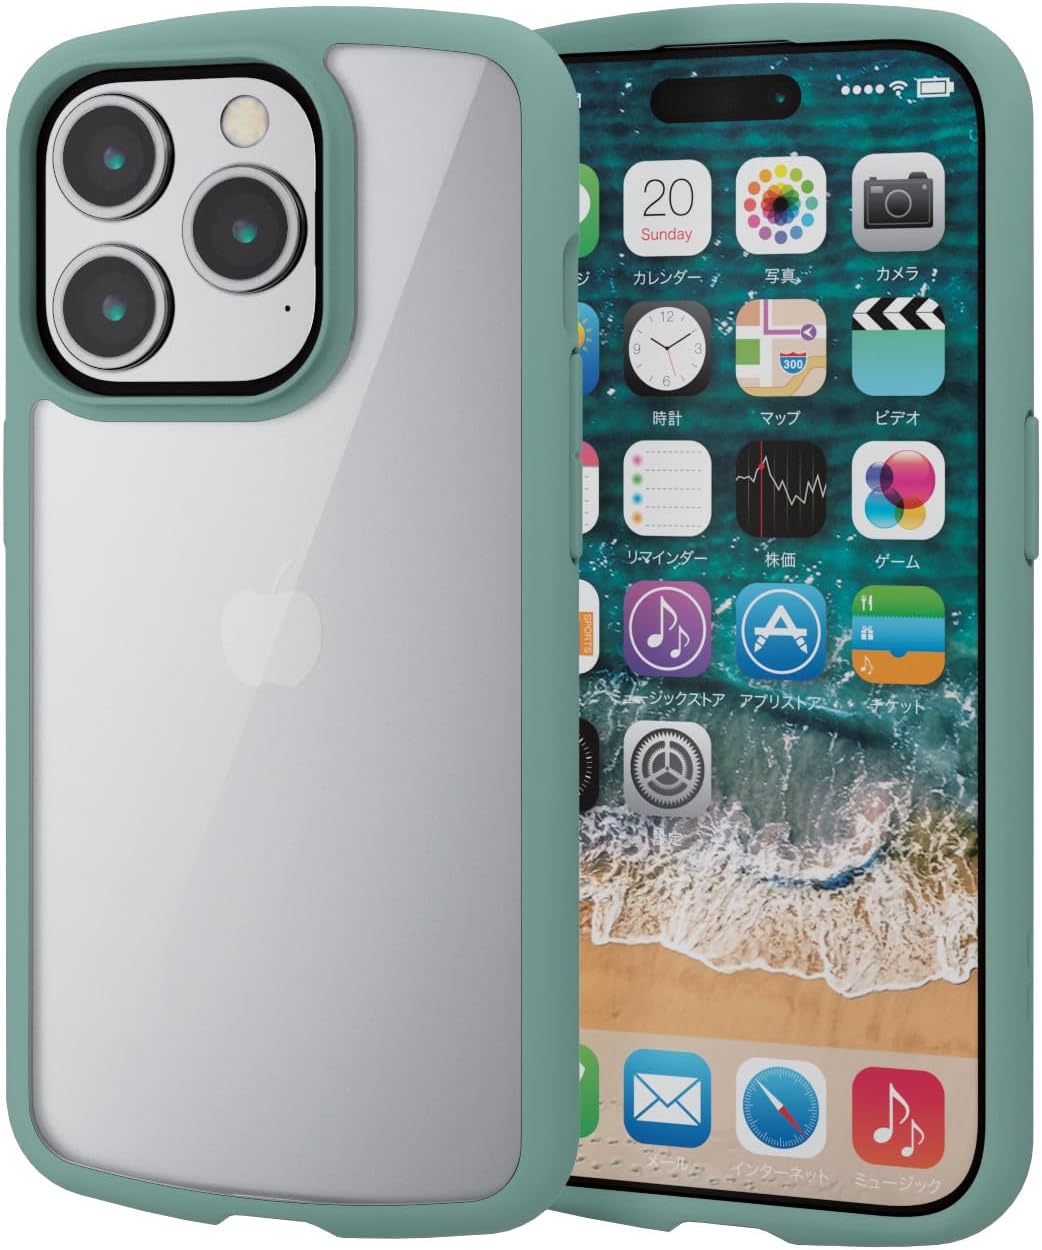 エレコム iPhone15 Pro ケース TOUGH SLIM LITE 耐衝撃 衝撃吸収 薄型 軽量 ストラップシート付き ストラップホール付き [全周配置のエアークッションが衝撃を吸収] グリーン PM-A23CTSLFCGN